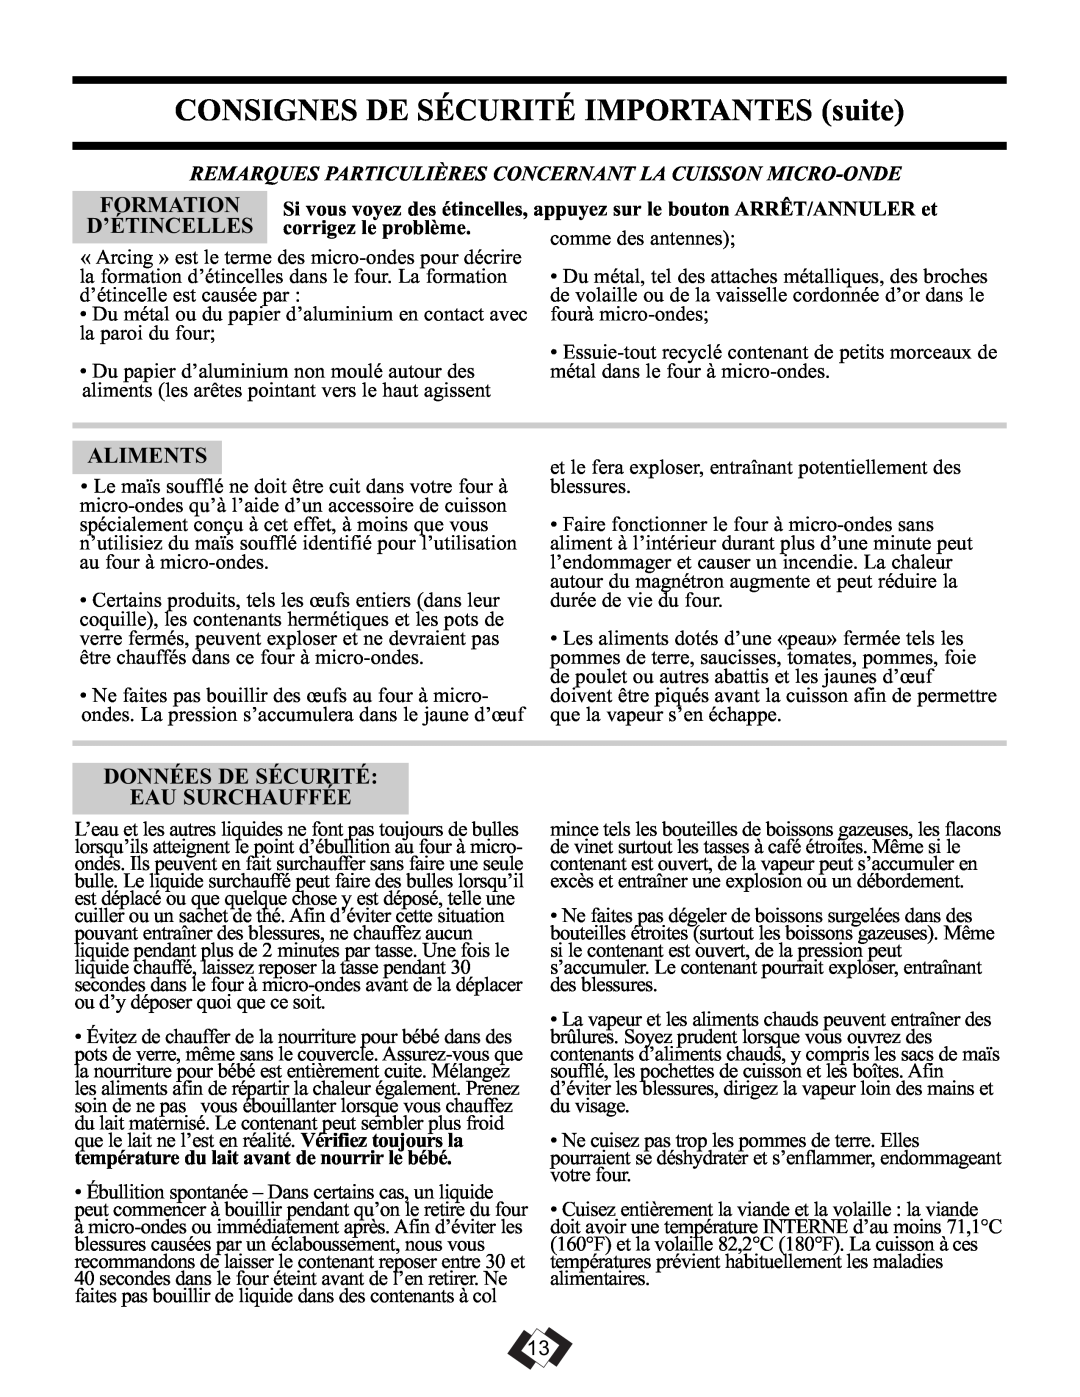 Sunbeam SBMW1109W/BL operating instructions Formation, D’Étincelles, Aliments, Données De Sécurité Eau Surchauffée 